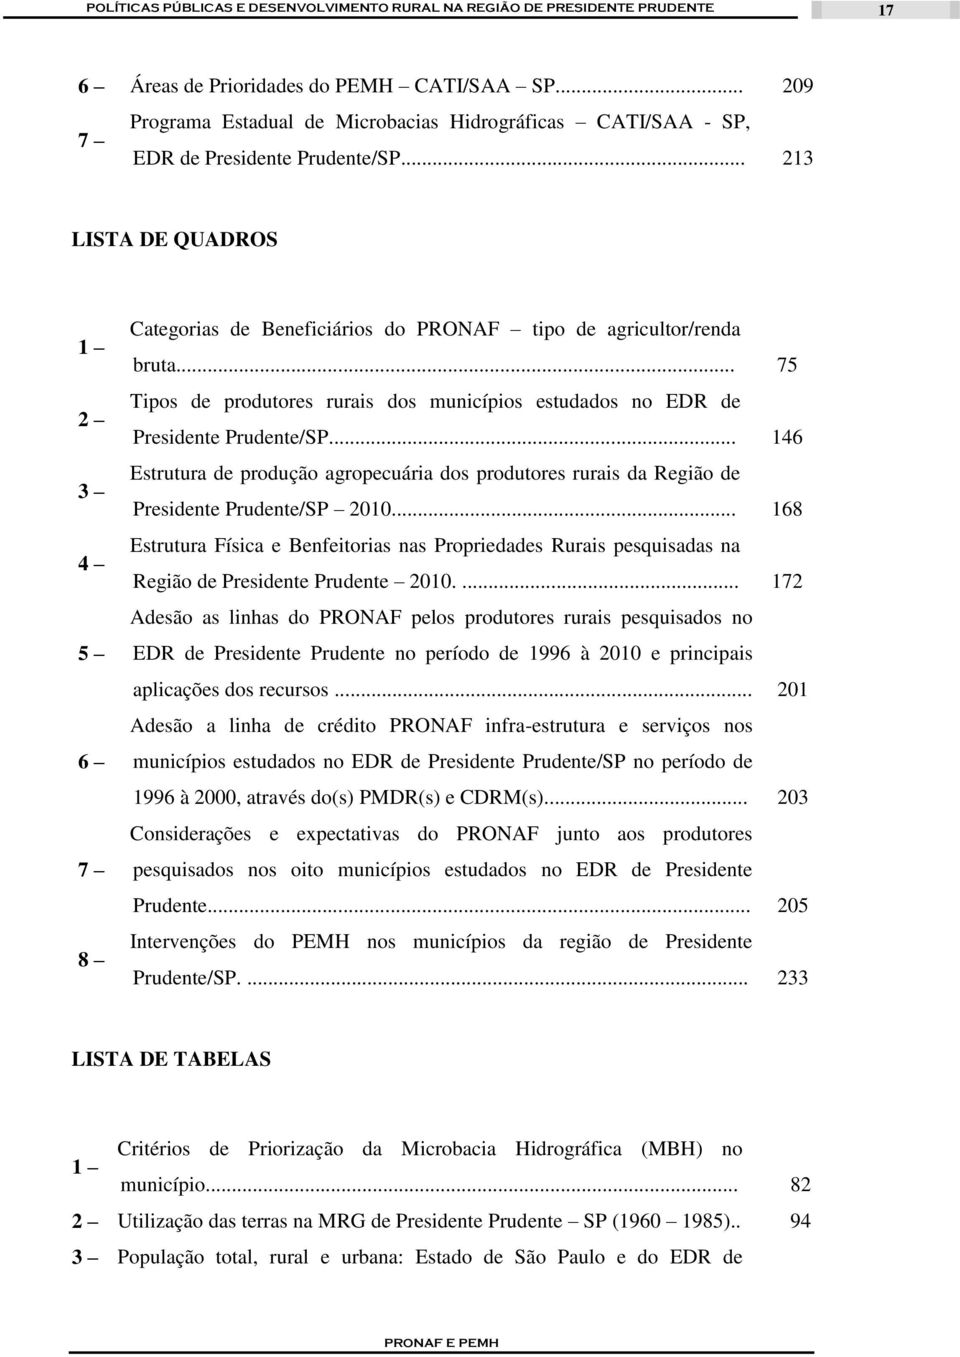 .. 146 Estrutura de produção agropecuária dos produtores rurais da Região de Presidente Prudente/SP 2010.